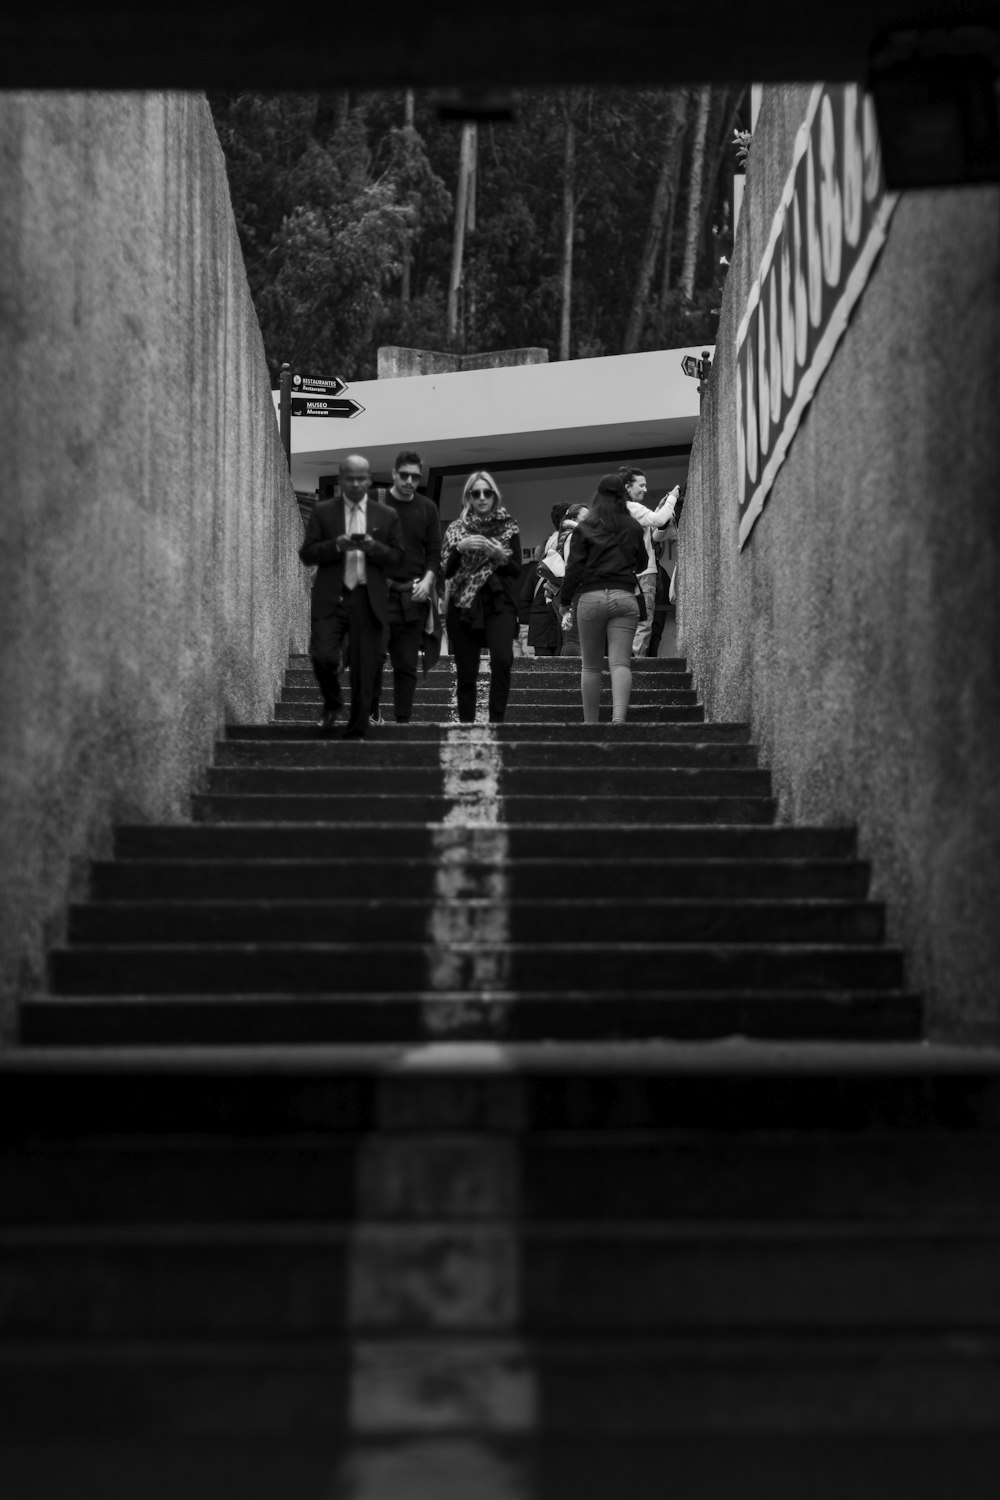 fotografia in scala di grigi di persone che camminano sulle scale